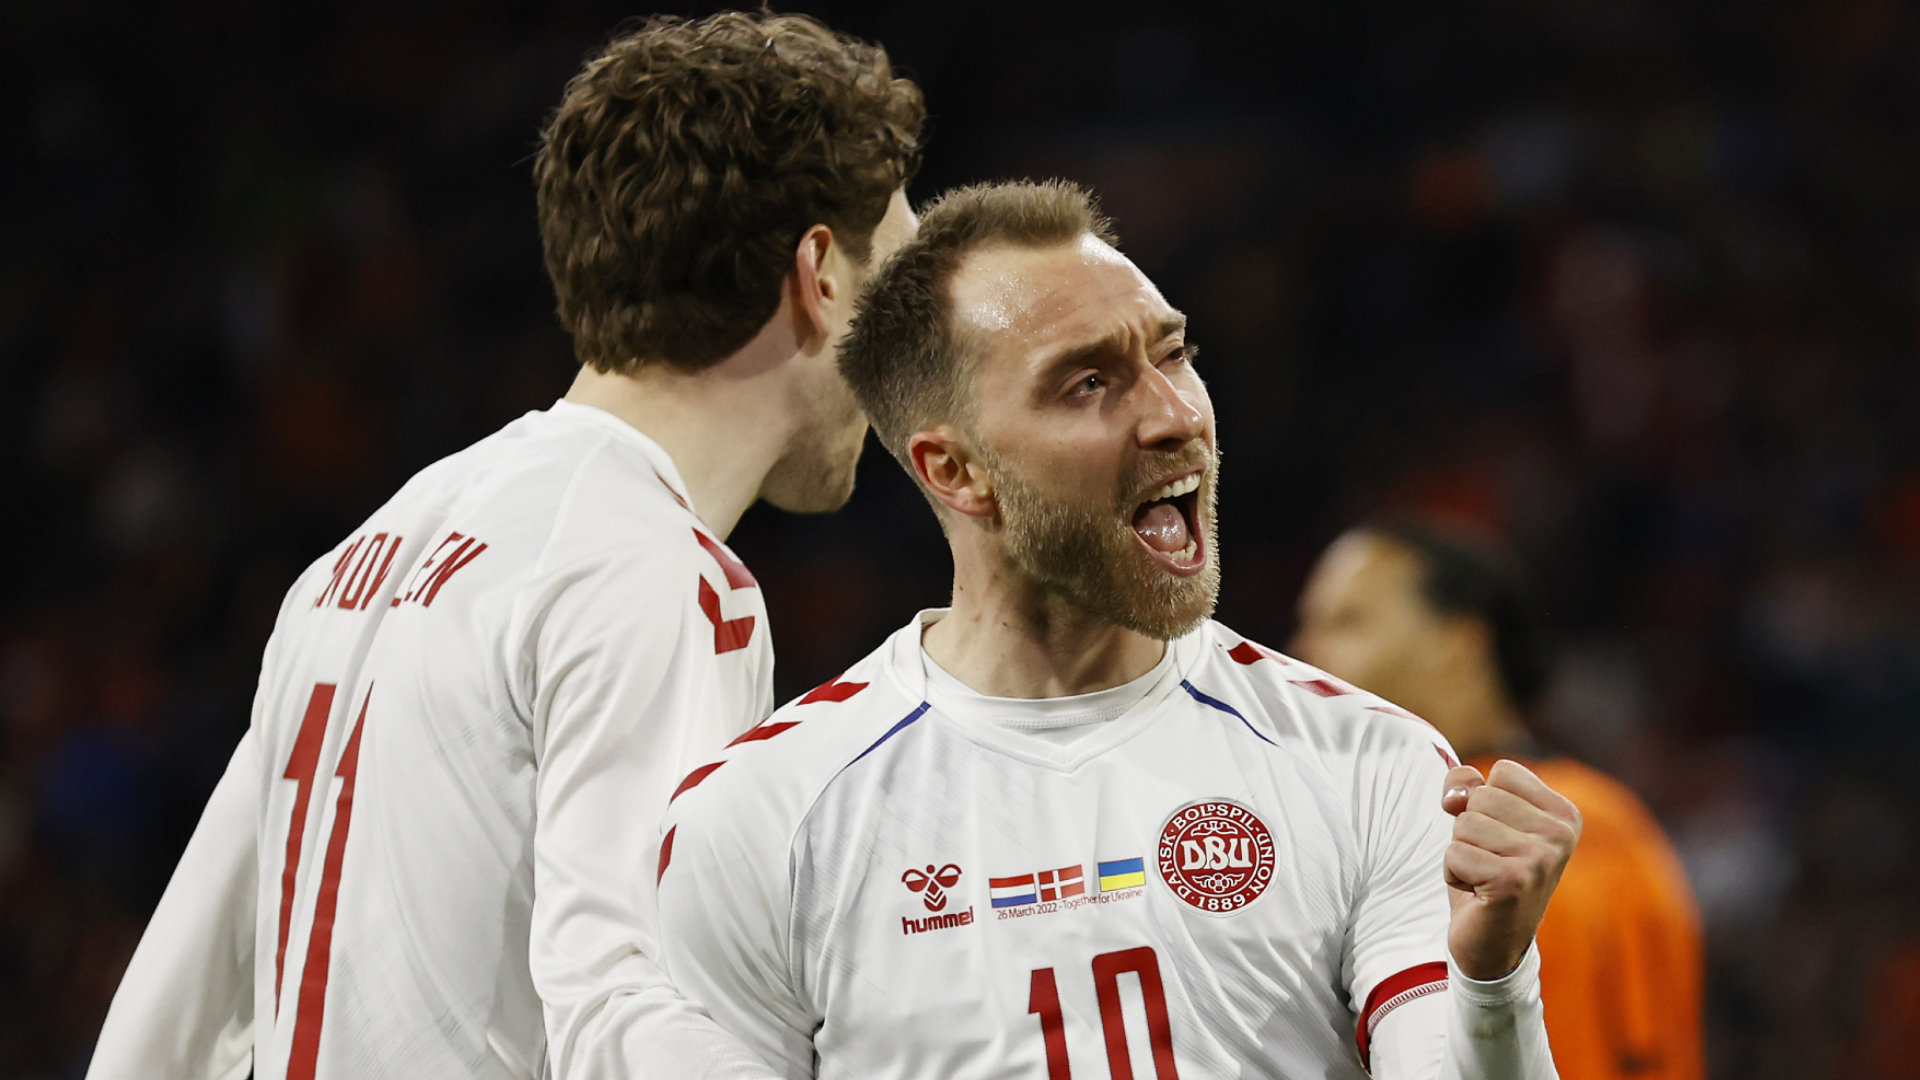 Netherlands 4-2 Denmark: Christian Eriksen scores in his international comeback